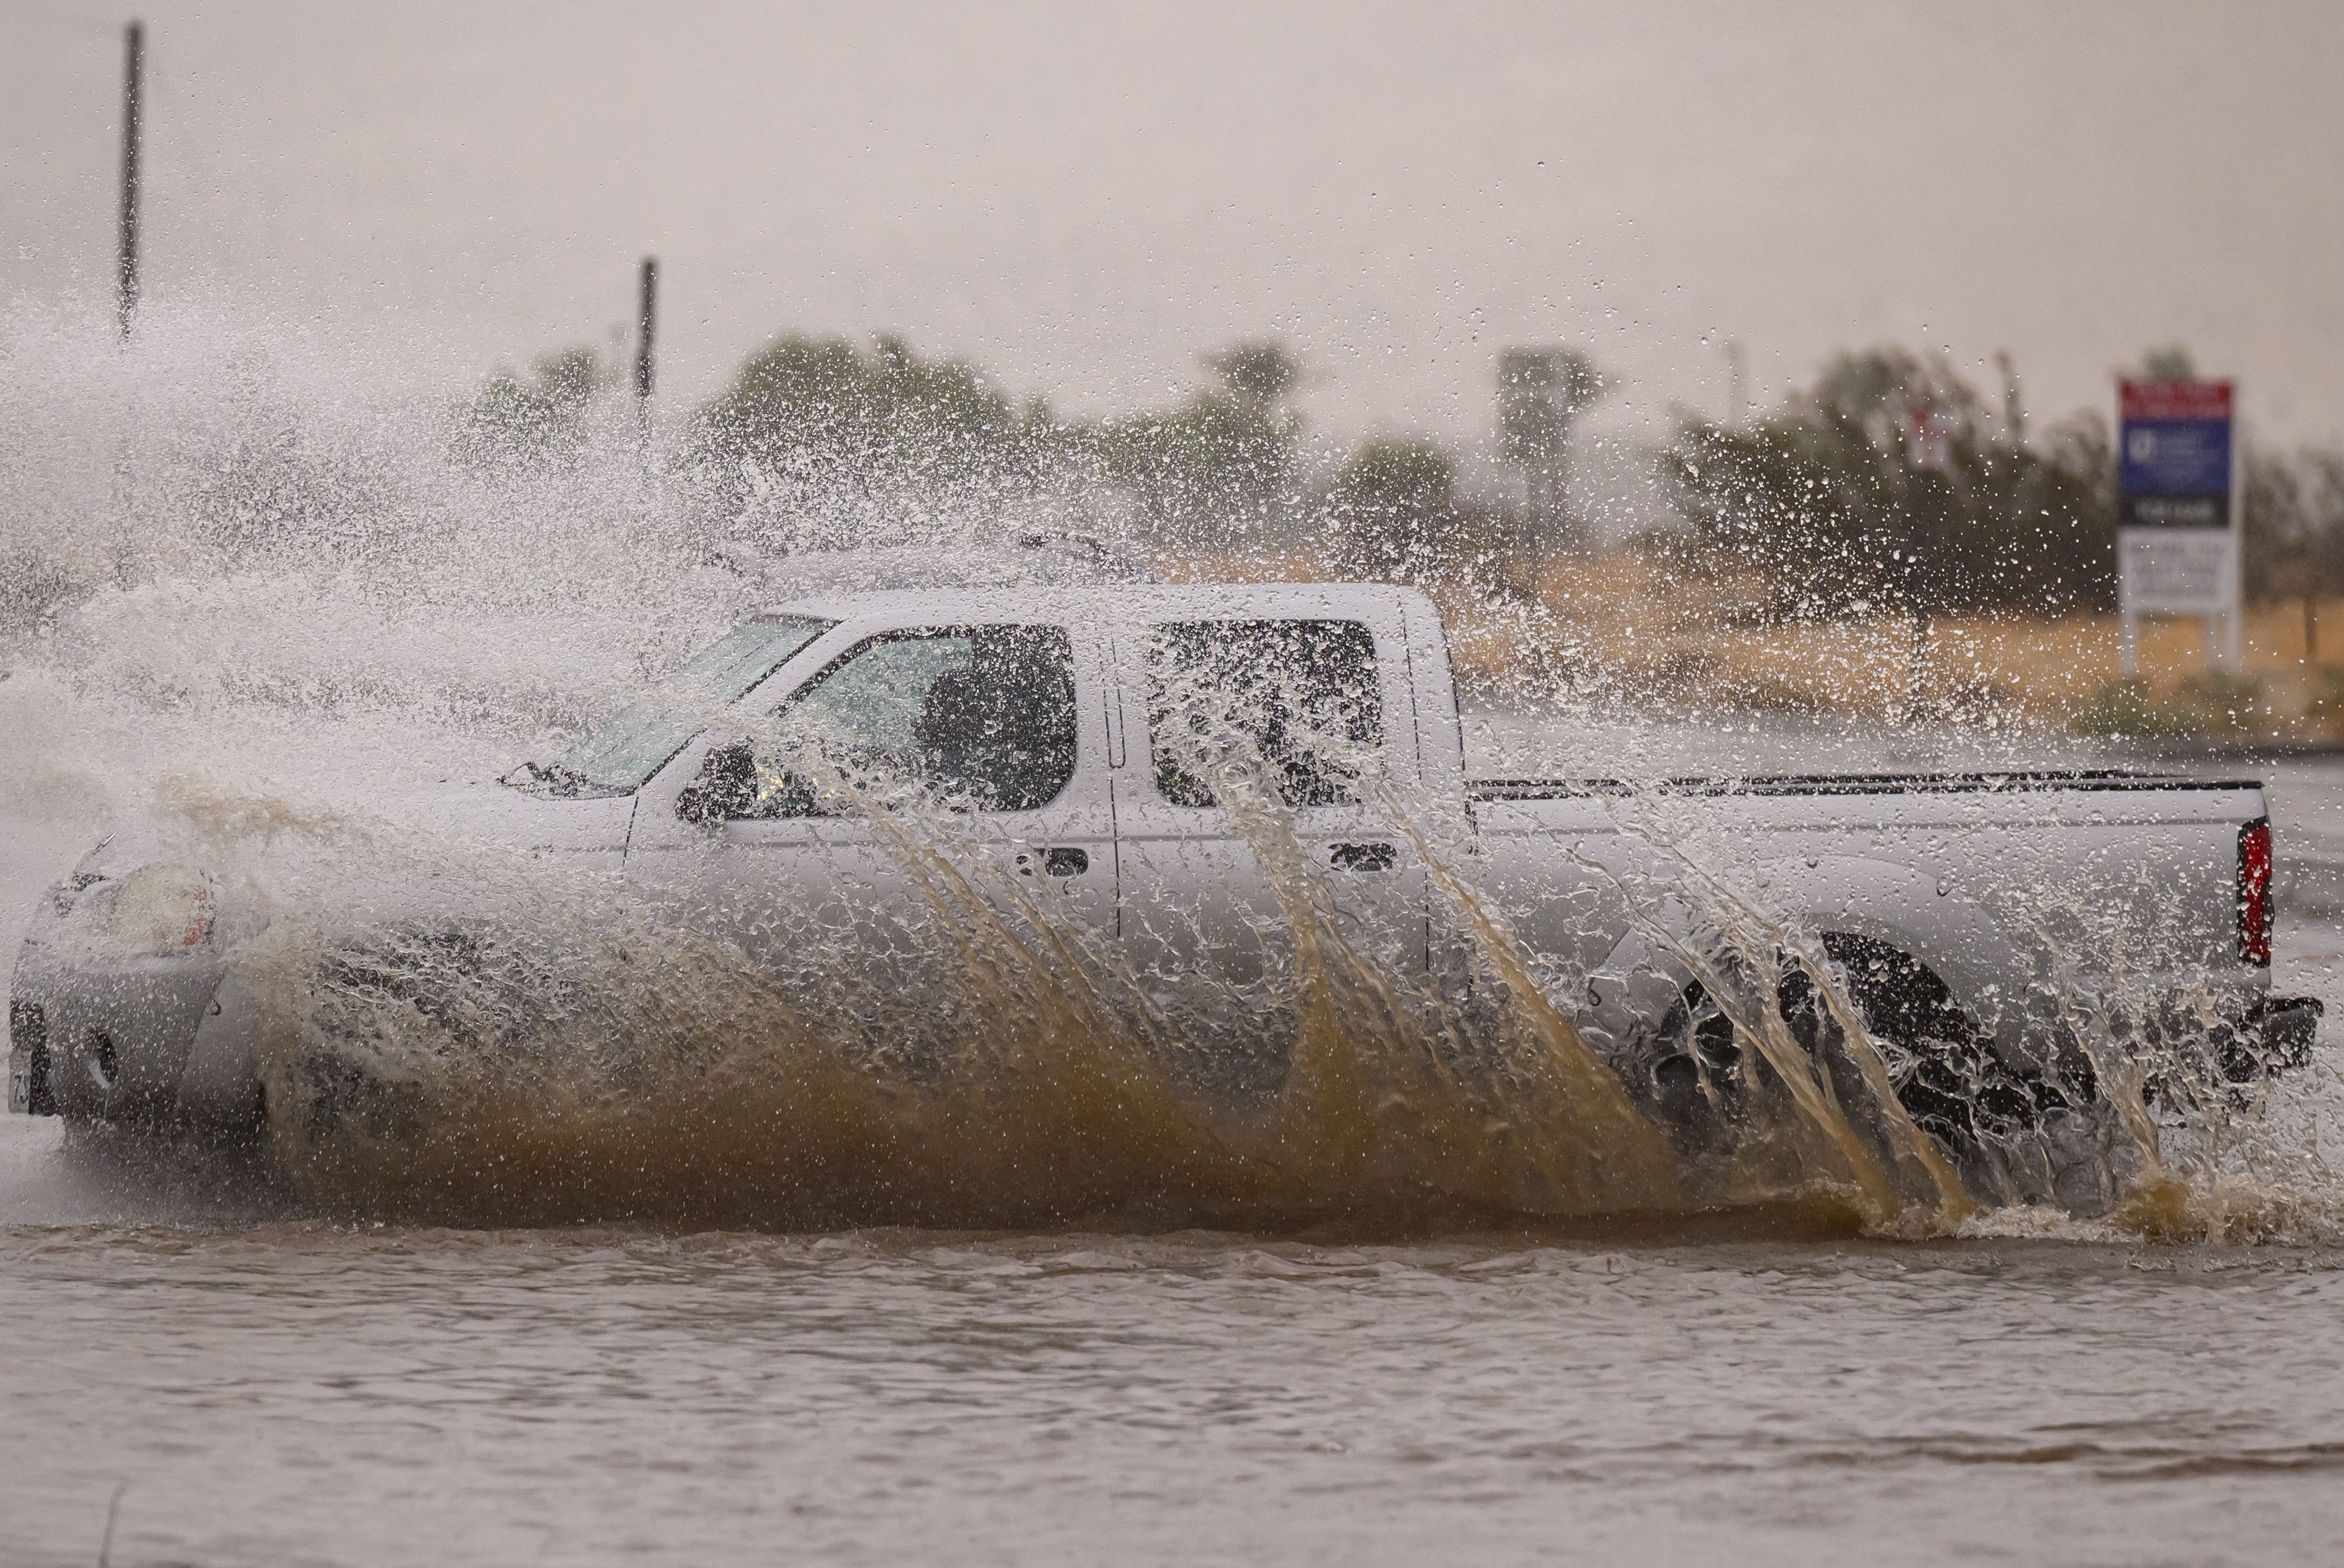 A truck driving through a flood